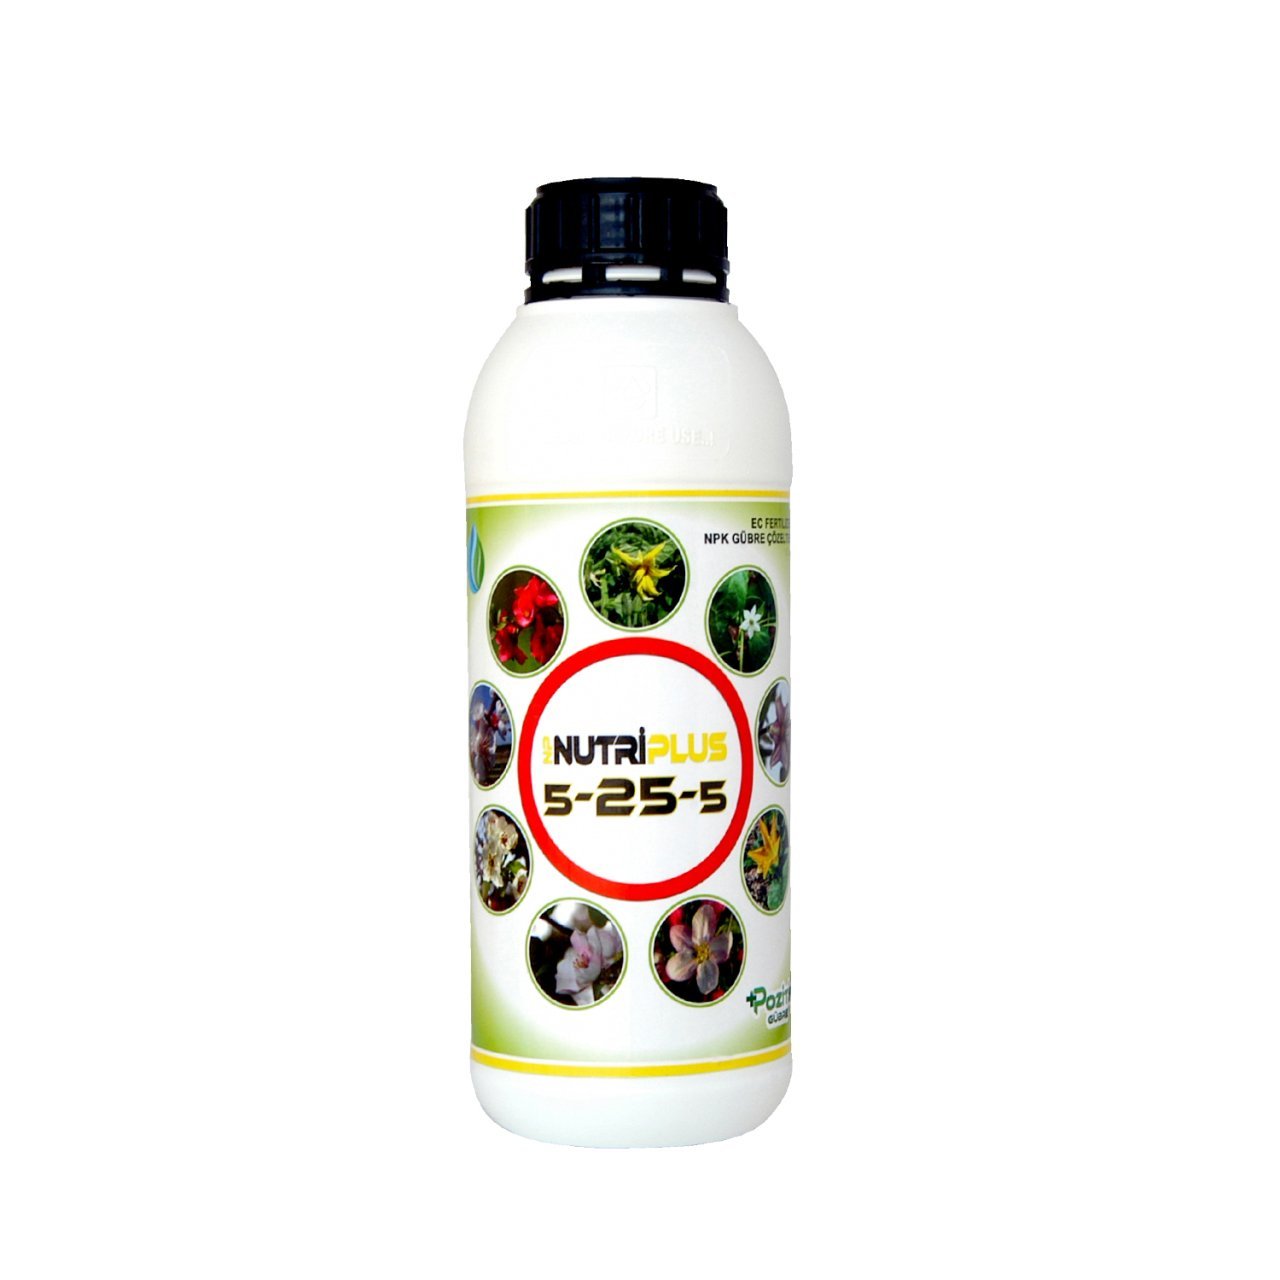 Nutriplus 5-25-5 Çiçeklendirici Sıvı Bitki Besleme 1 Lt.